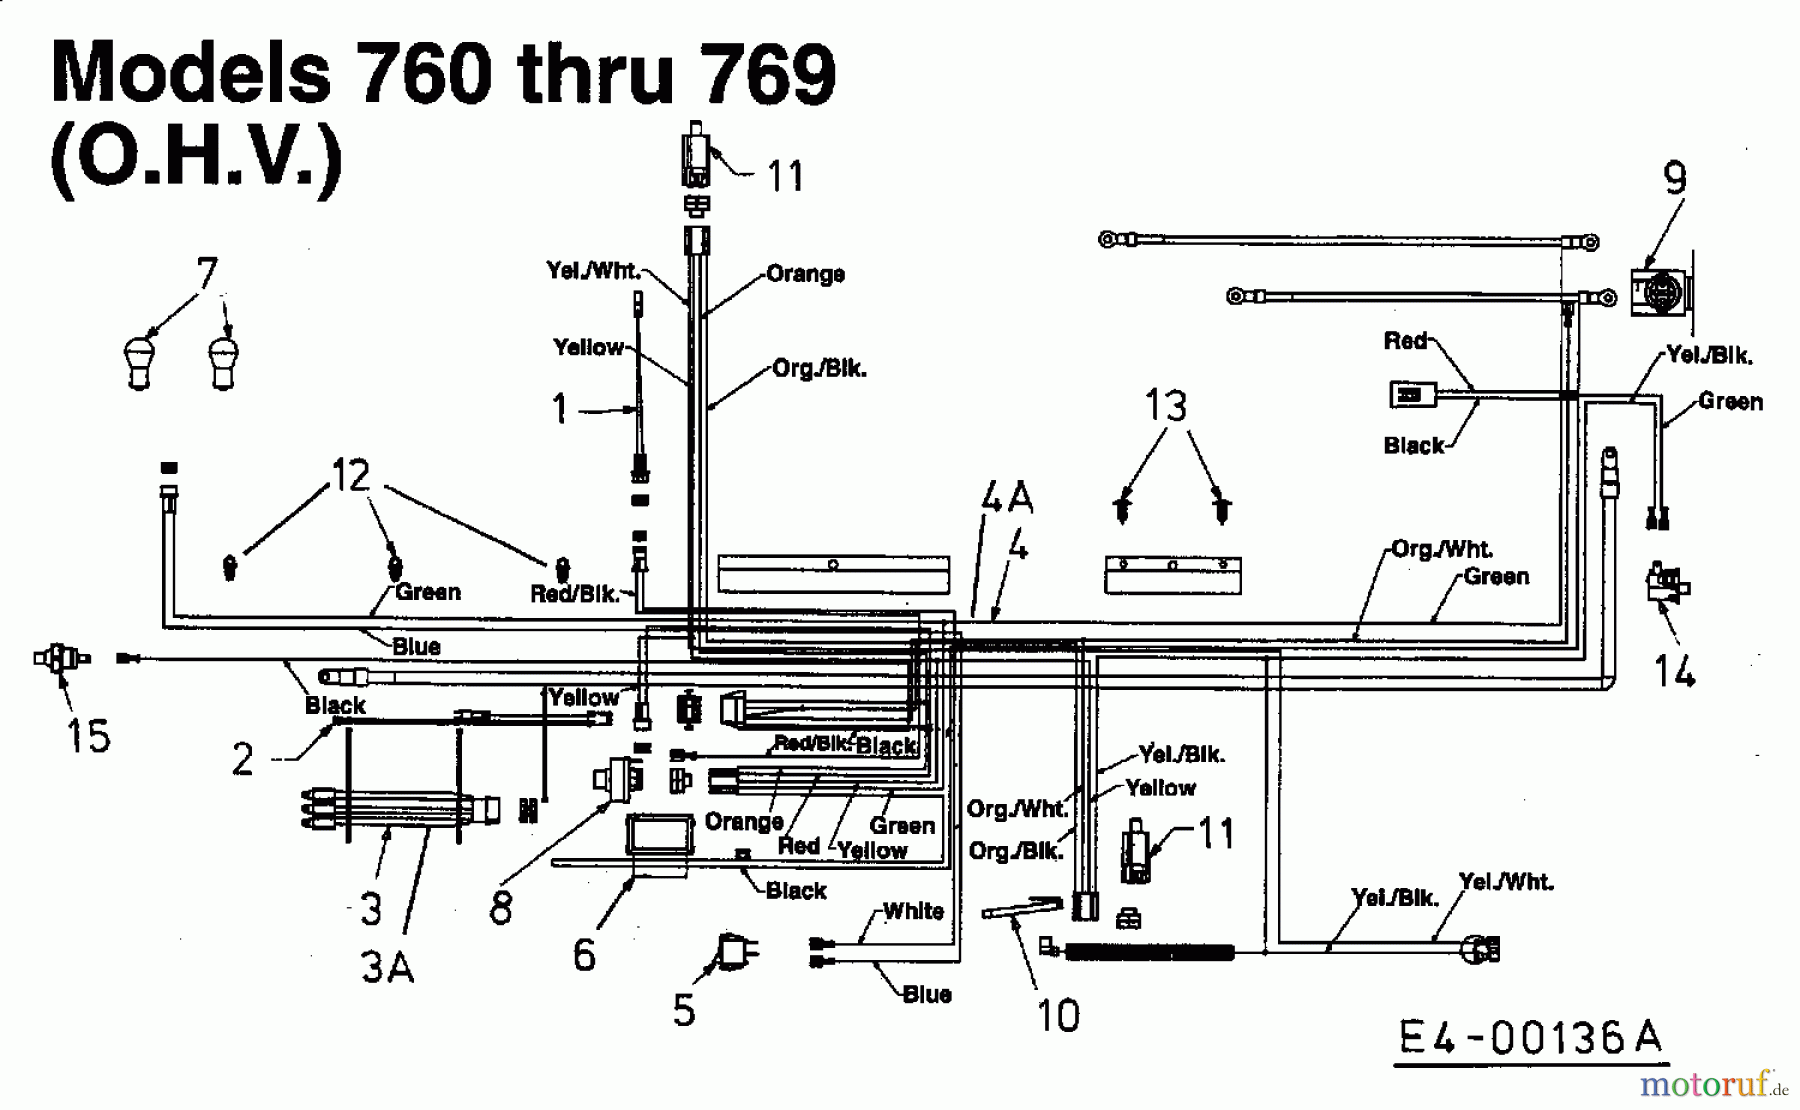  Harry Lawn tractors 131 B 13 13DA763N662  (2000) Wiring diagram for O.H.V.